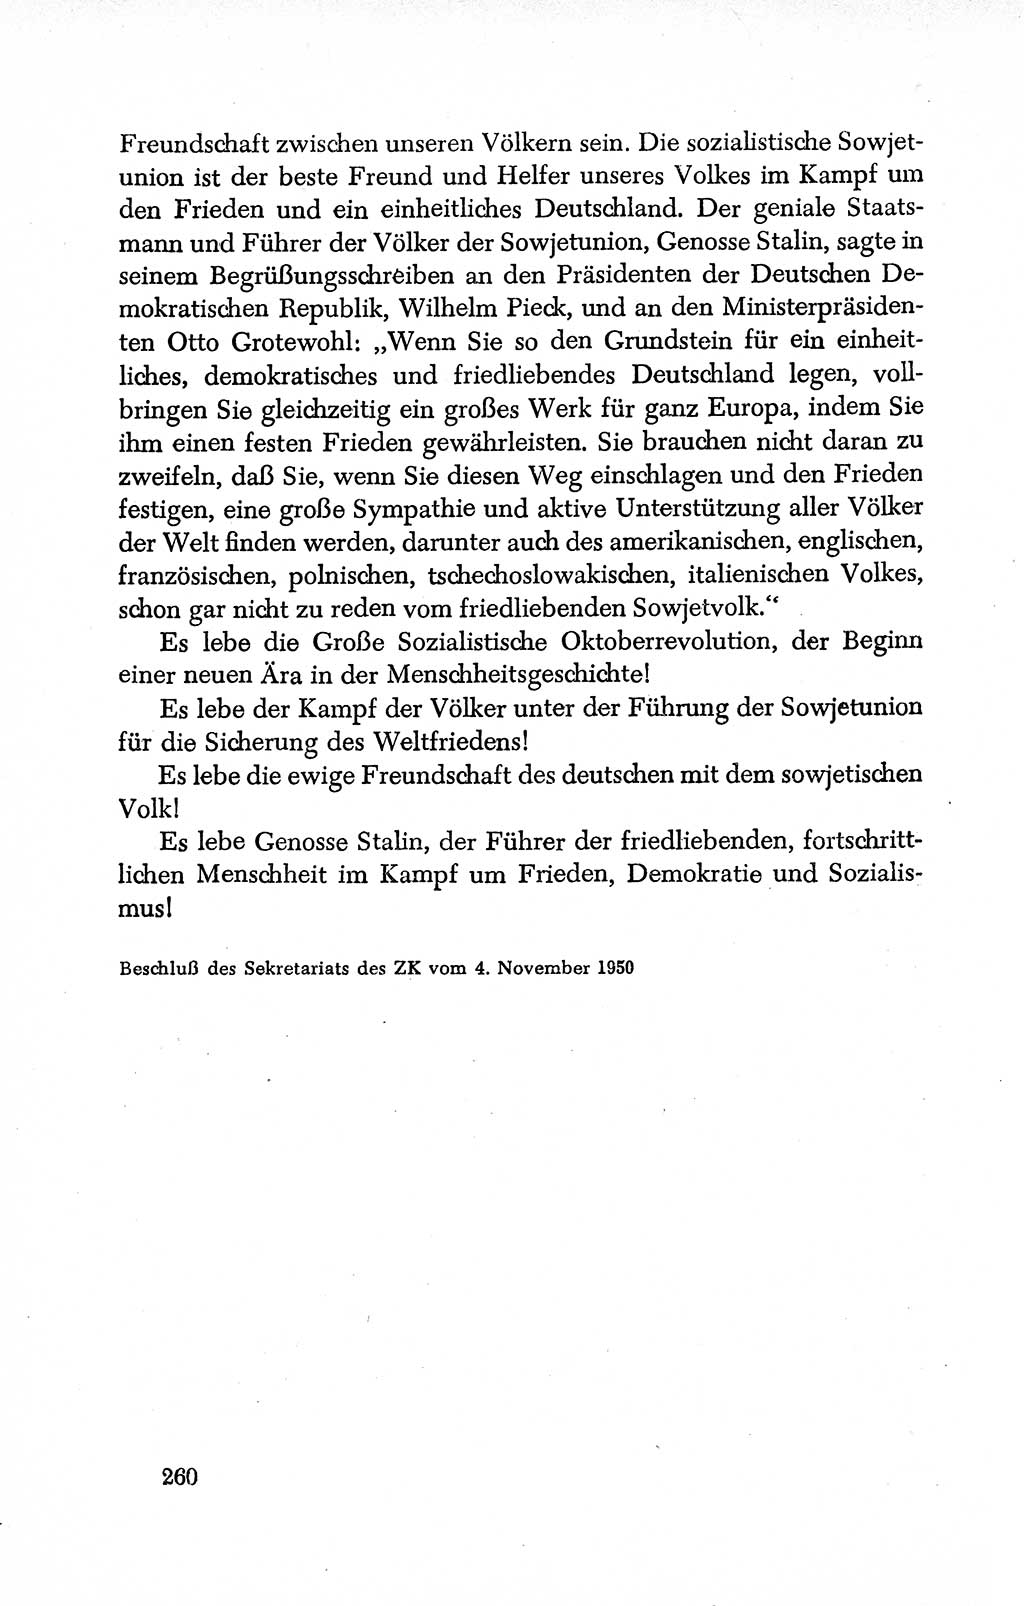 Dokumente der Sozialistischen Einheitspartei Deutschlands (SED) [Deutsche Demokratische Republik (DDR)] 1950-1952, Seite 260 (Dok. SED DDR 1950-1952, S. 260)